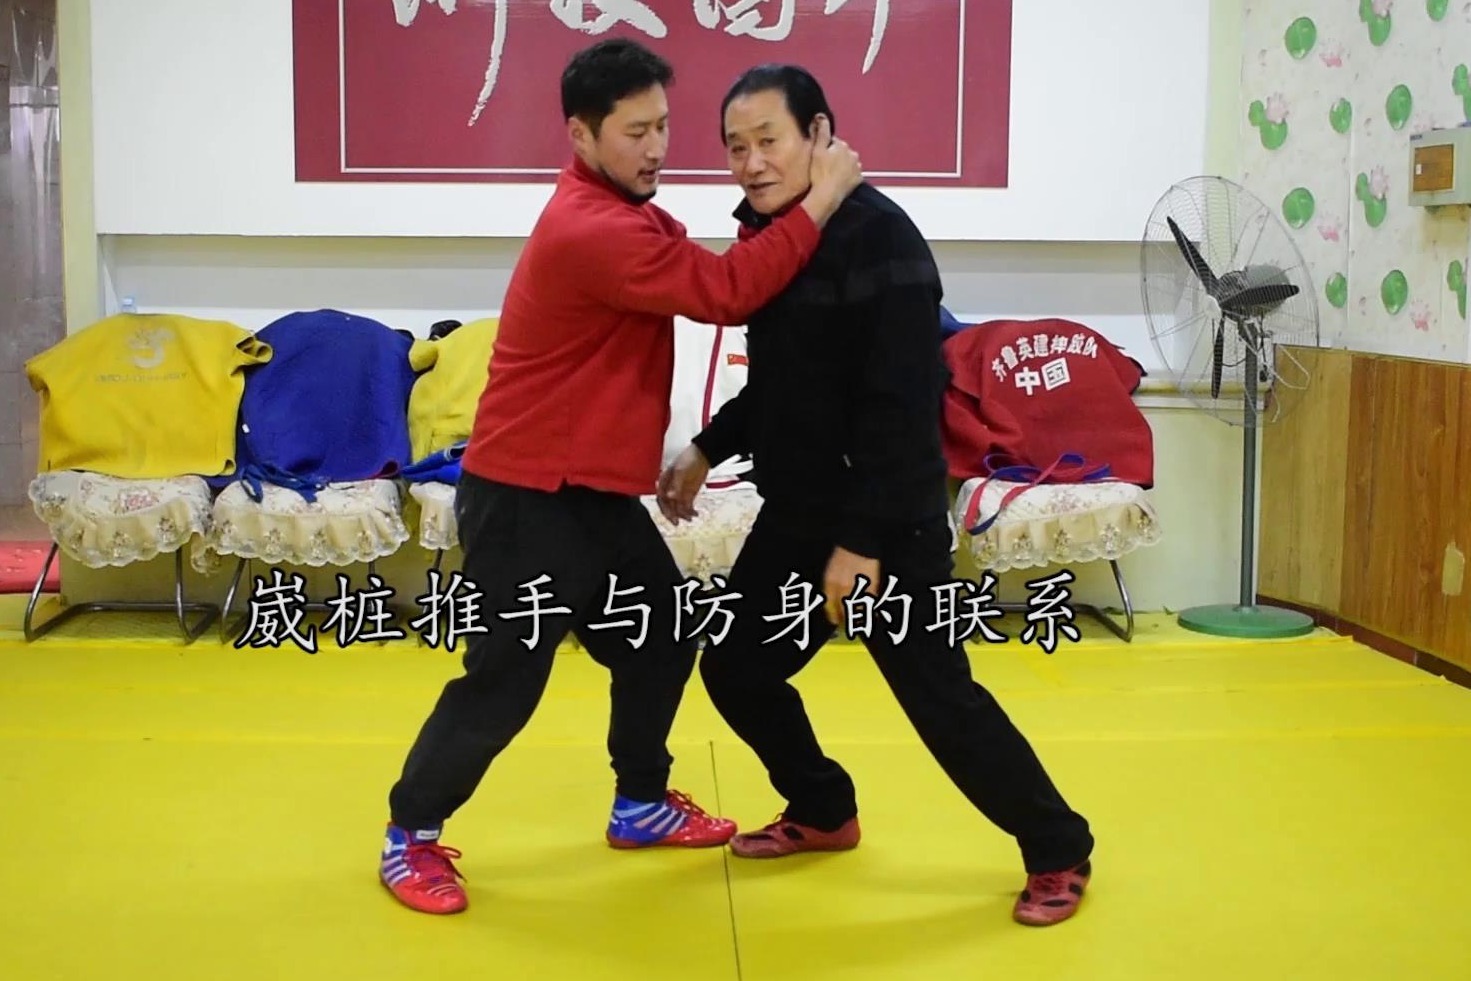 1分钟中国跤防身:手腕反关节战胜对手,刘清海老师武术摔法